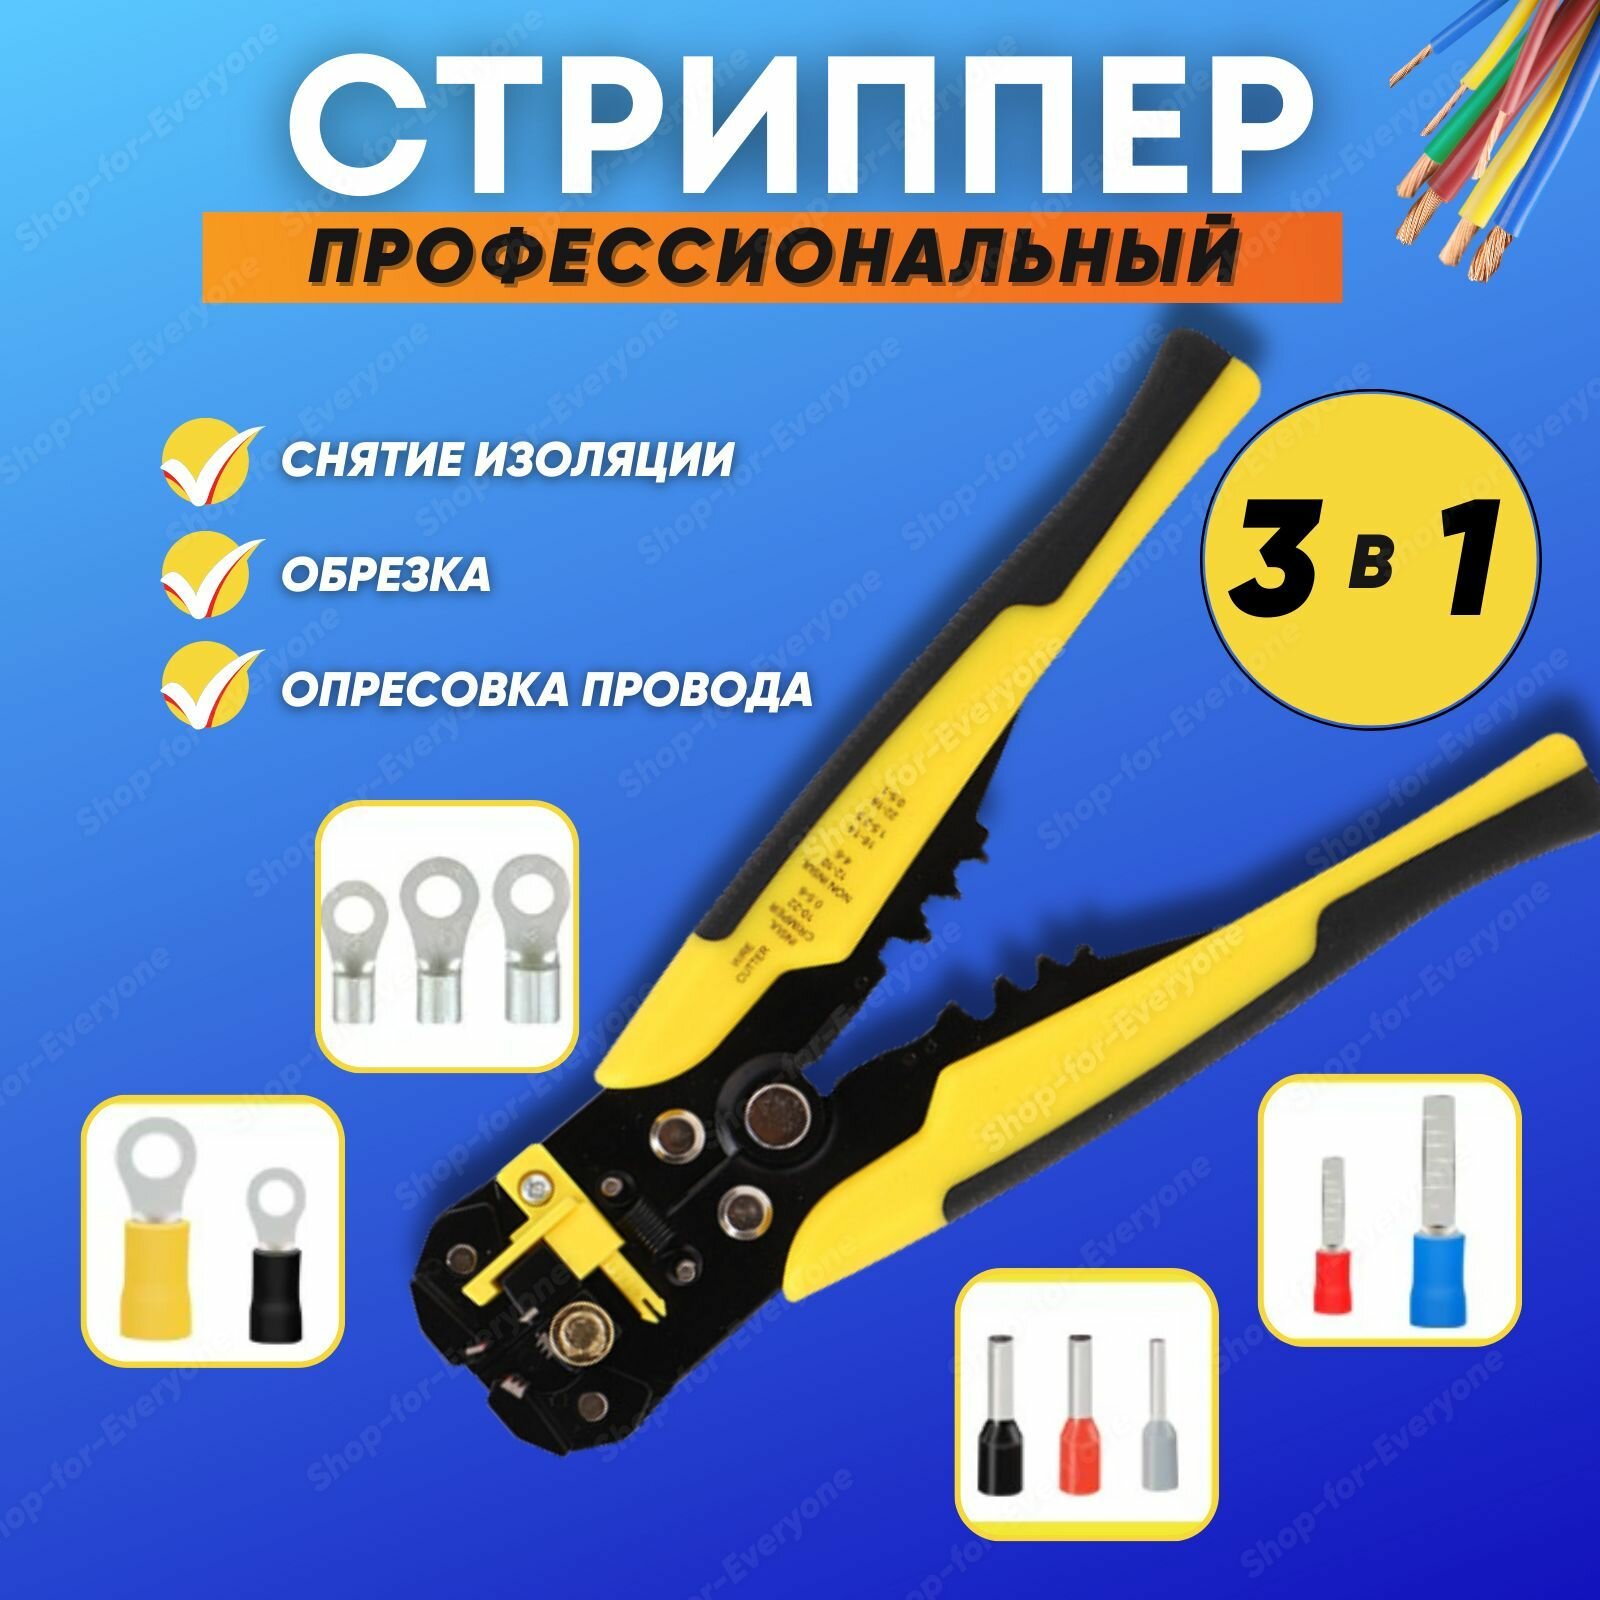 Стриппер 3в1 для снятия изоляции (провода 0,02-6 кв. мм) Клещи-кримпер обжимные желтые